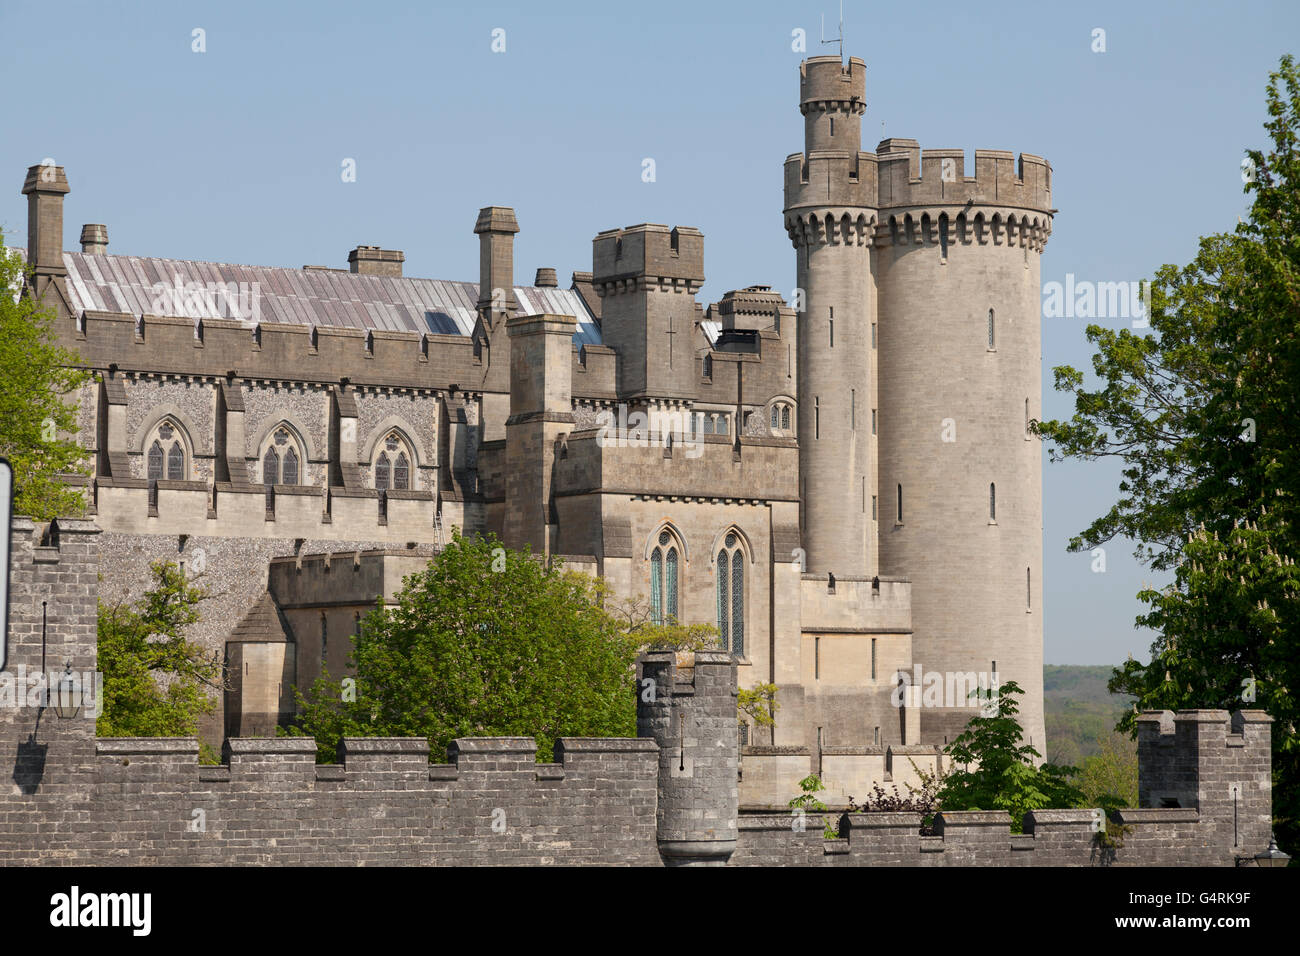 Arundel Castle tours et tourelles, Arundel, West Sussex, Angleterre, Royaume-Uni, Europe Banque D'Images